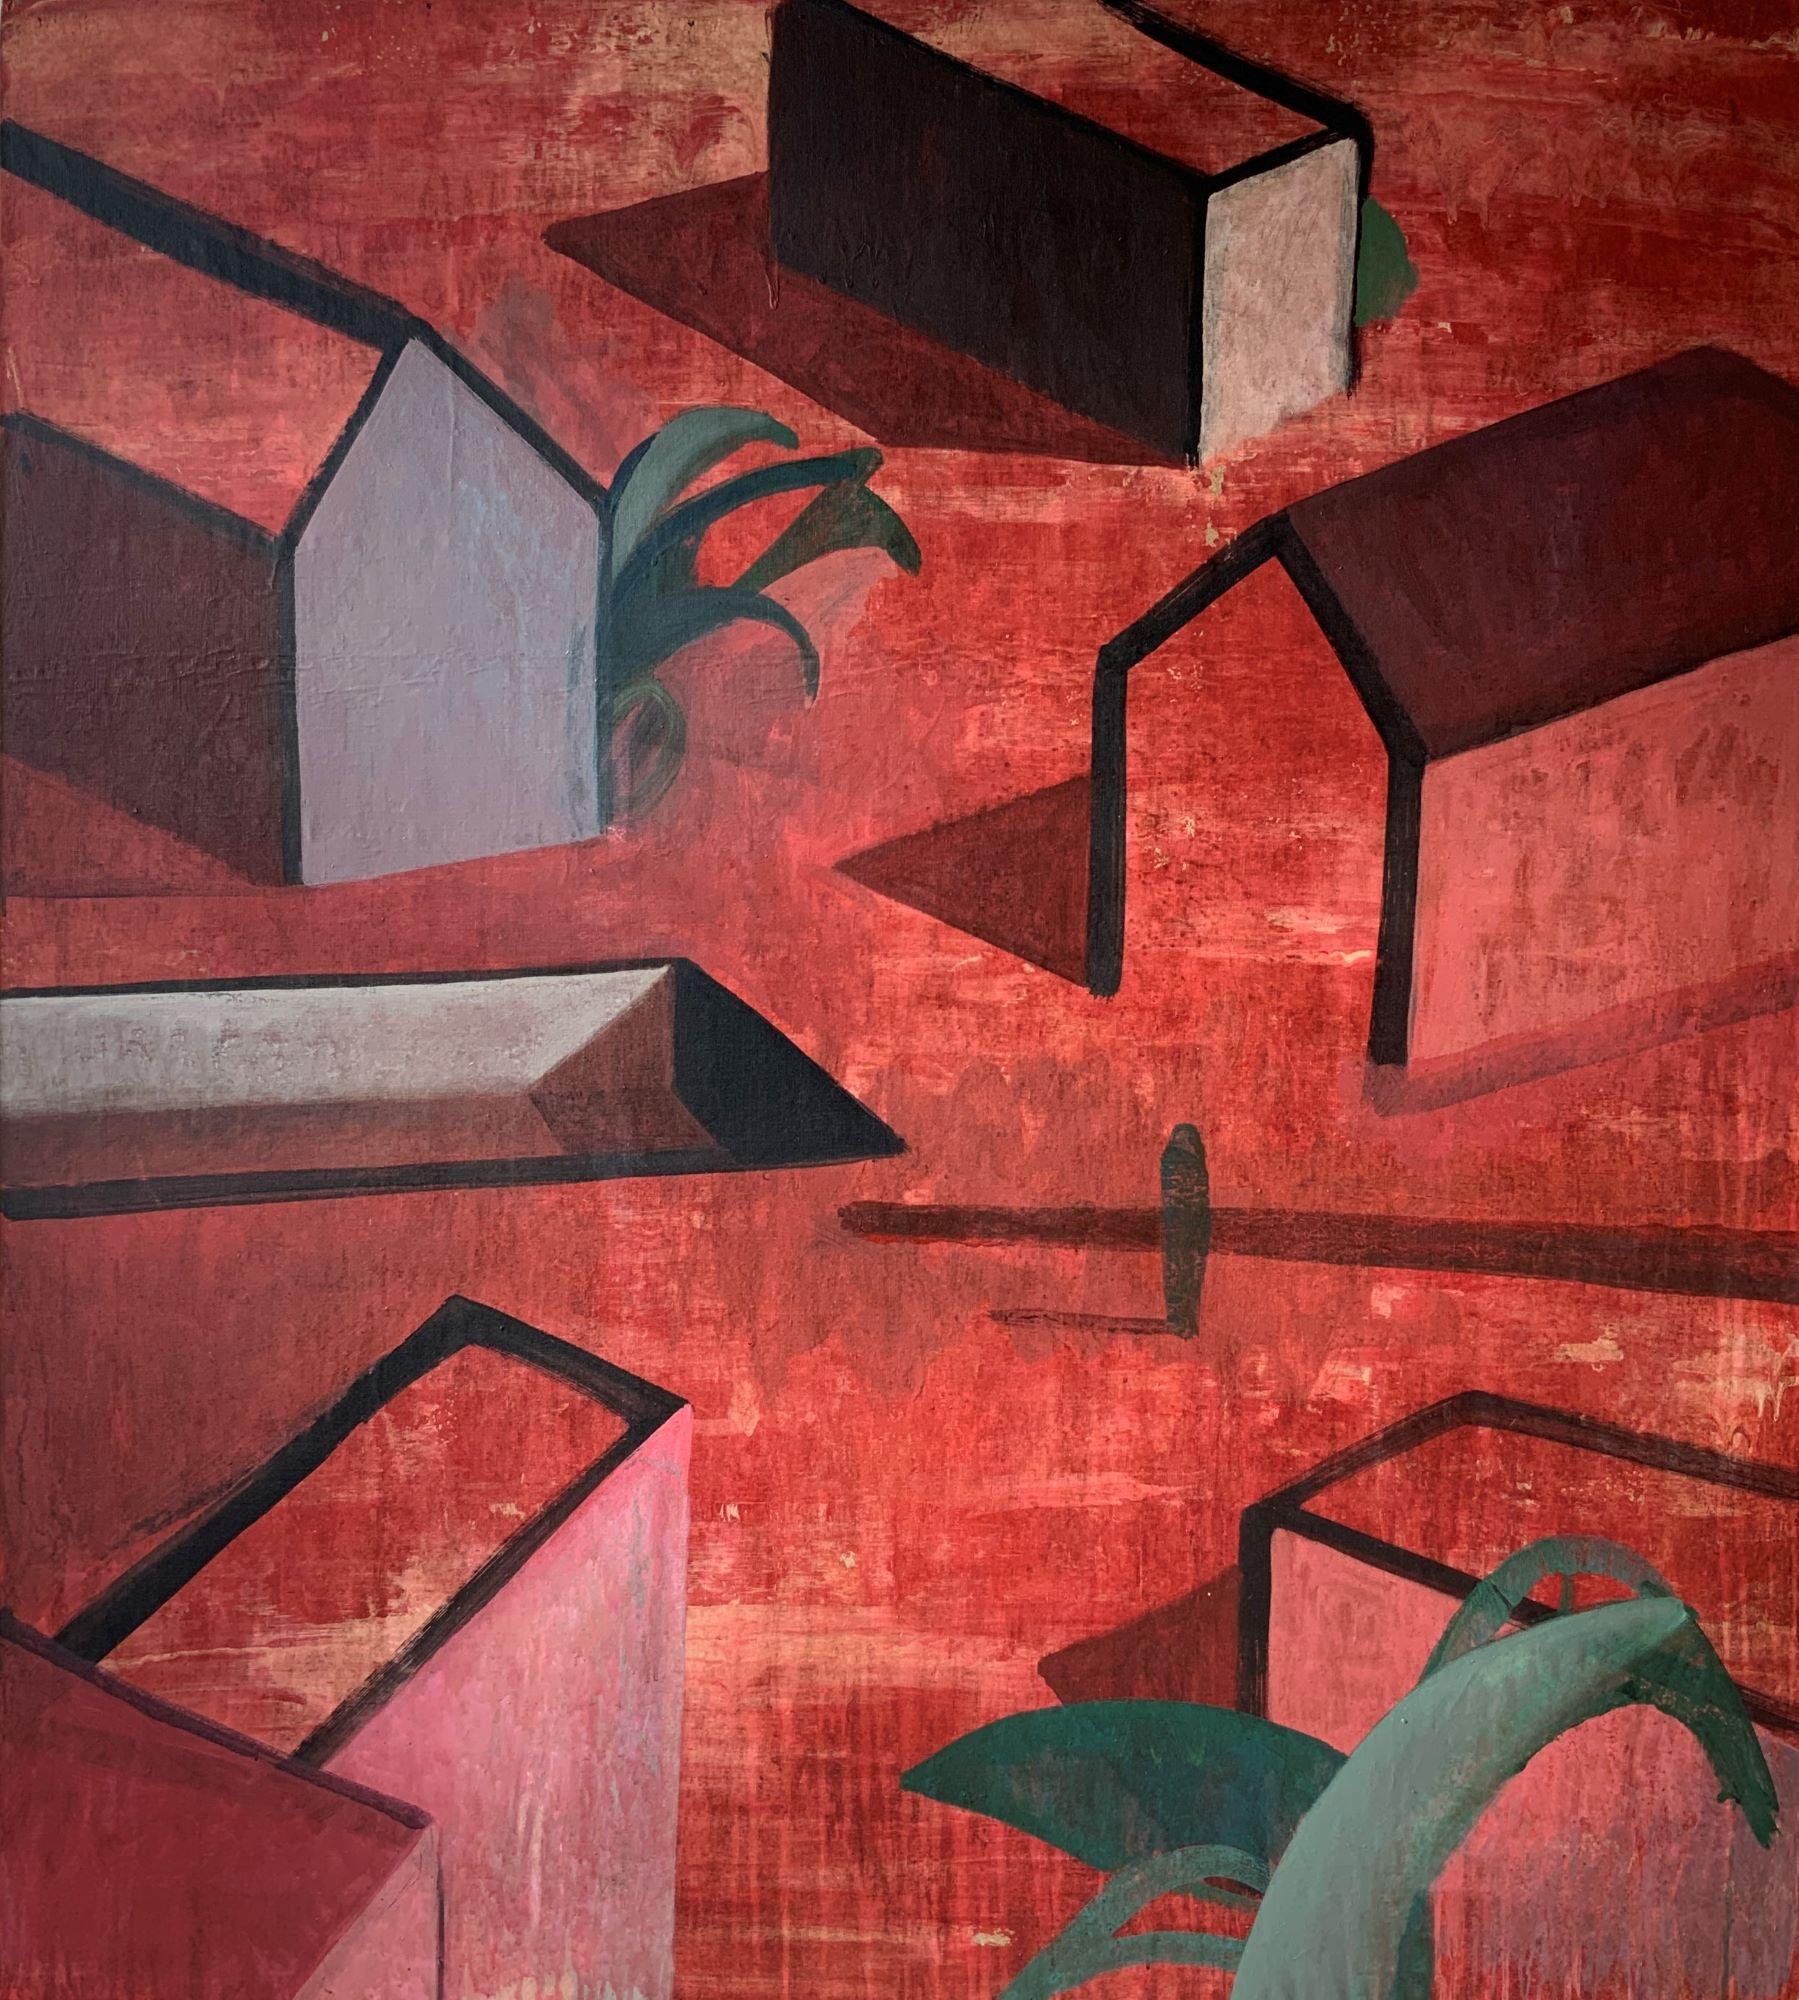 UON est une peinture acrylique sur toile unique de l'artiste contemporain Ramon Enrich, dont les dimensions sont de 150 × 135 cm (59,1 × 53,1 in). 
L'œuvre est signée, vendue non encadrée et accompagnée d'un certificat d'authenticité. 

Ramon HAR